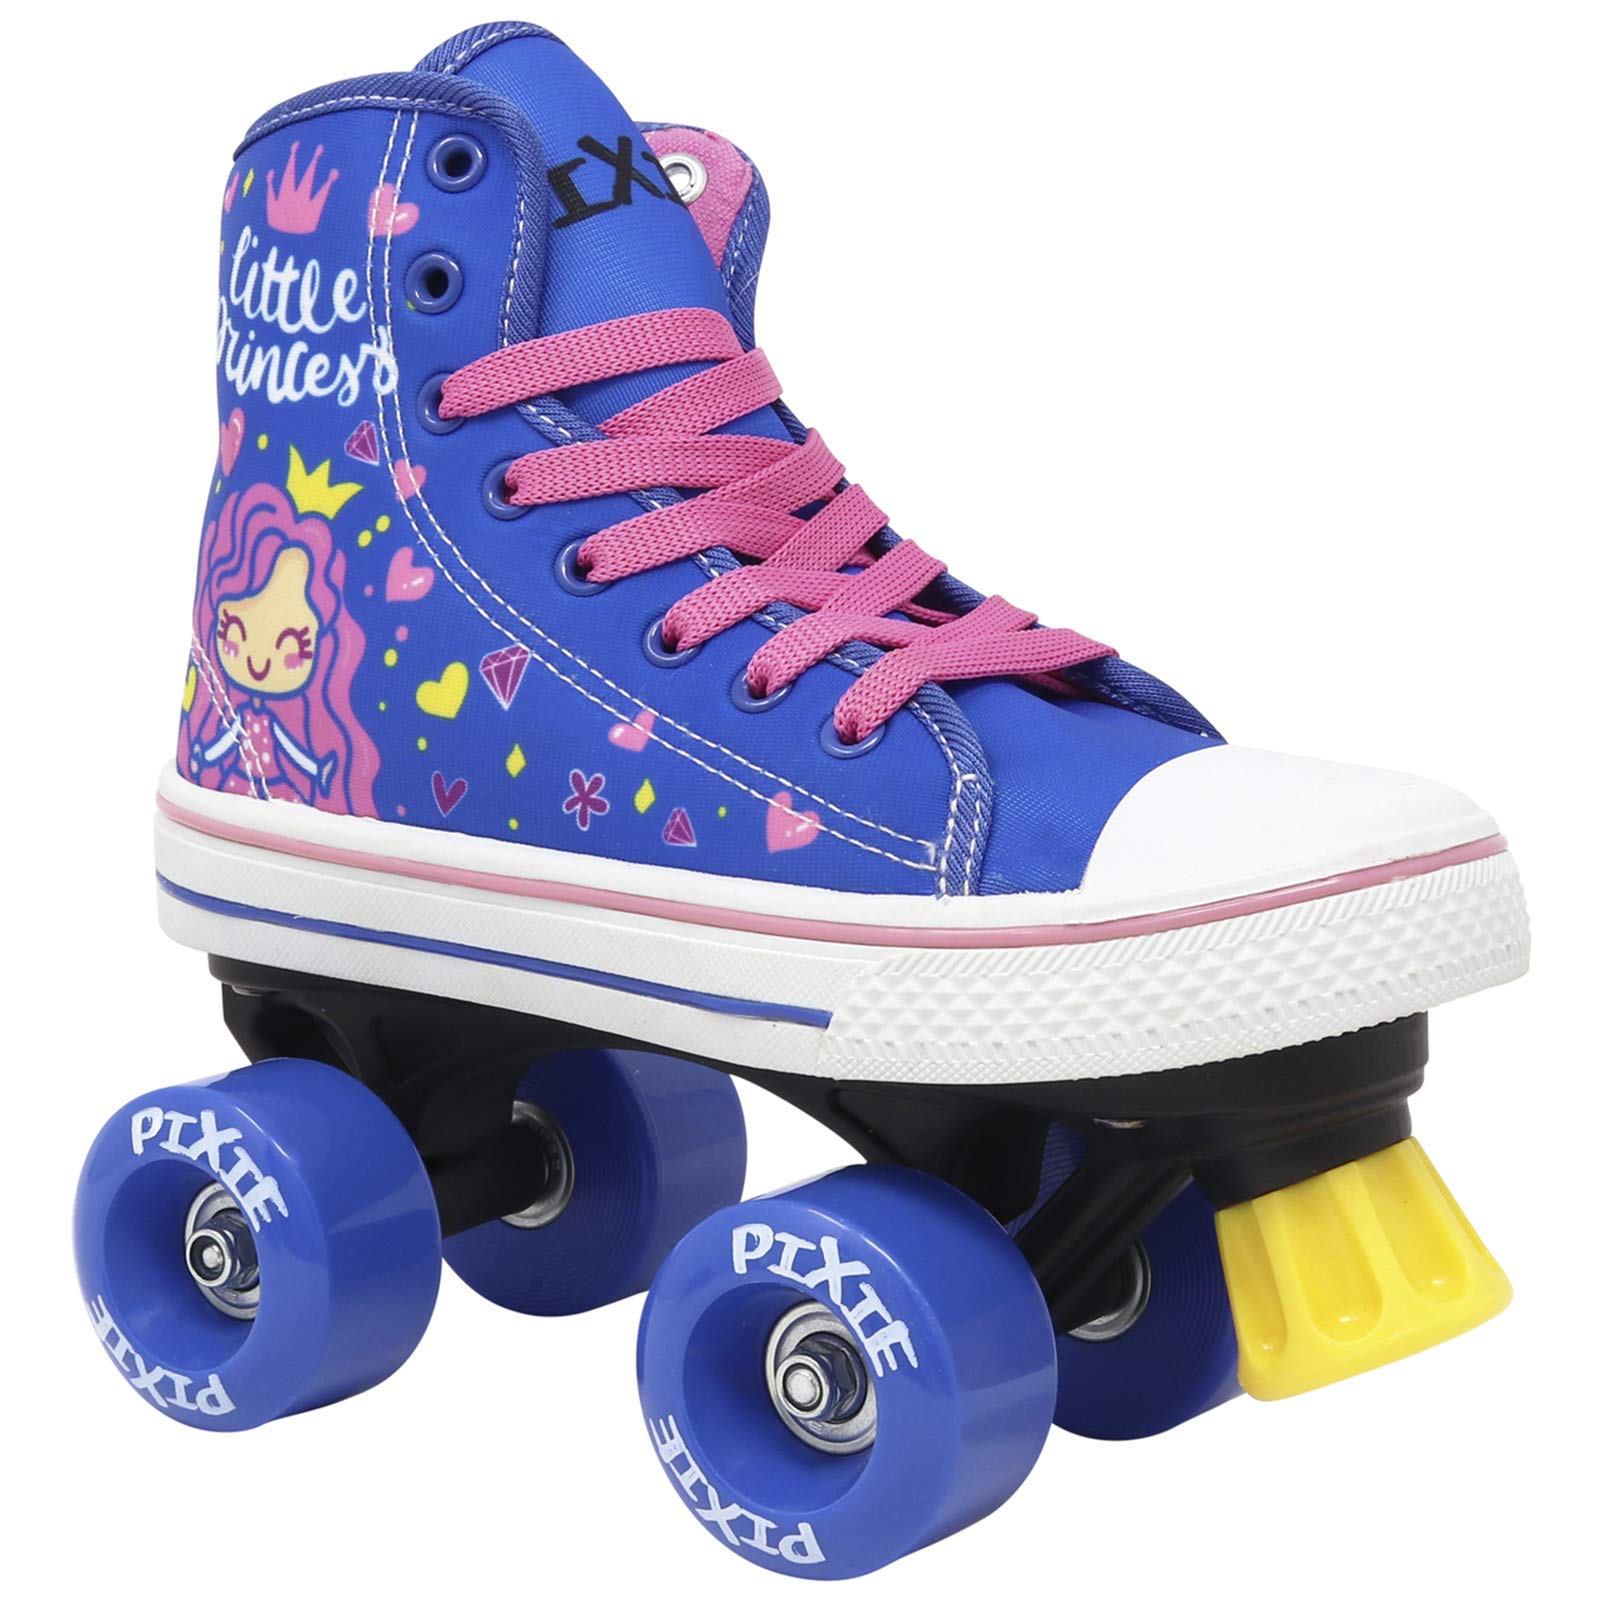 Lenexa Roller Skates for Girls - Pixie Little Princess Kids Quad Roller Skate - Indoor, Outdoor Children's Skate - Roller Skates Made for Kids - High Top Sneaker Style - Great for Beginners (J12)